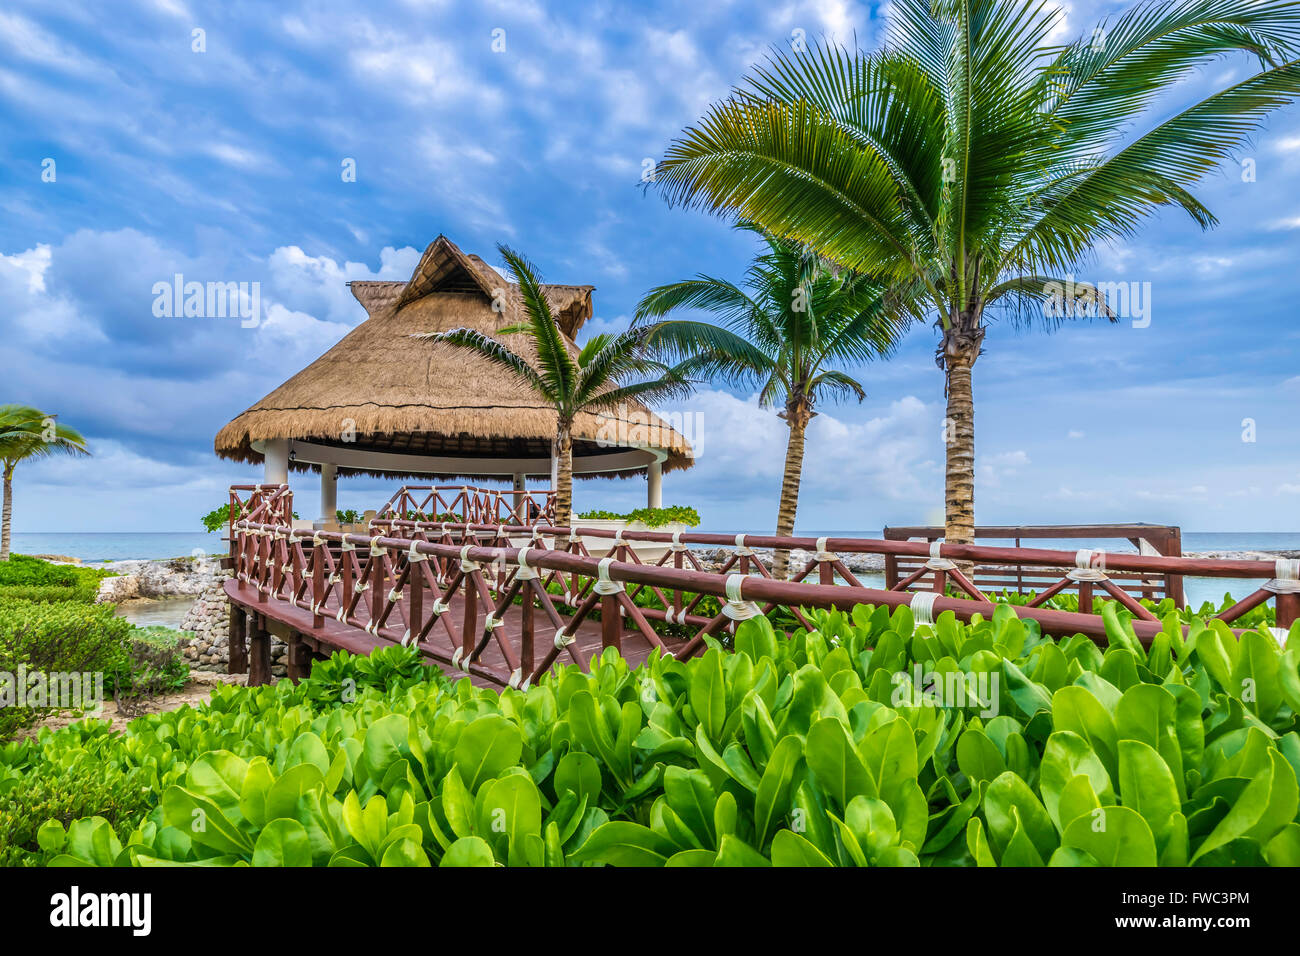 Thatched Cabana on the coast Stock Photo